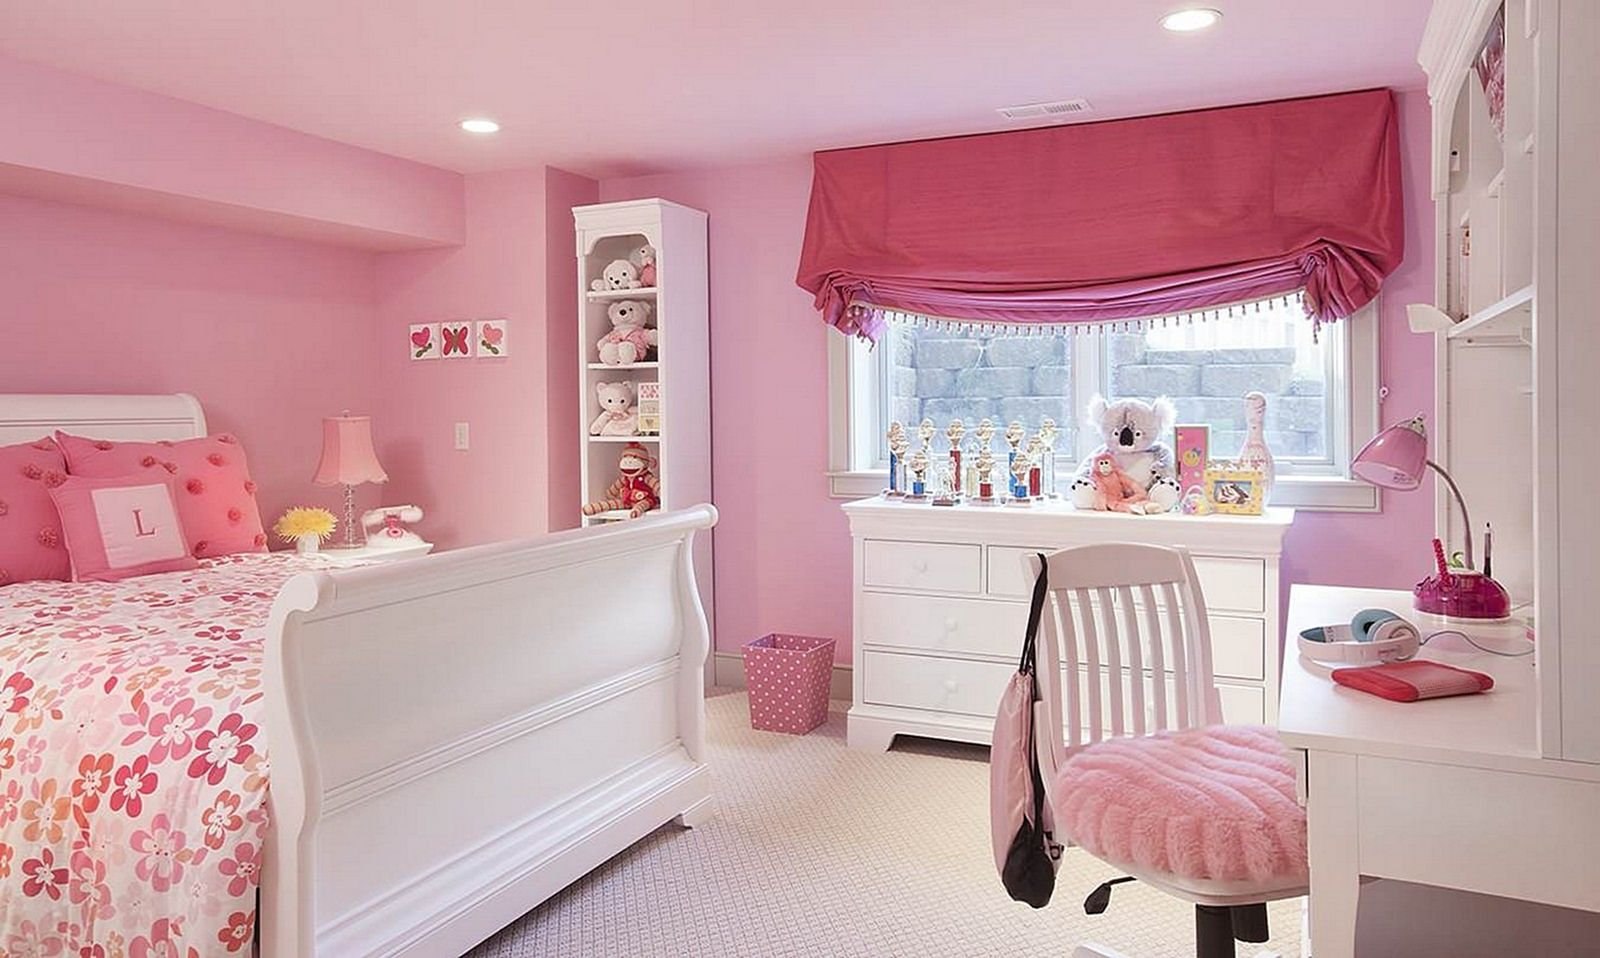 Комната в розовых тонах. Комната для девочки. Детские комнаты для девочек. Красивые комнаты для девочек. Интерьер детской комнаты девочке.